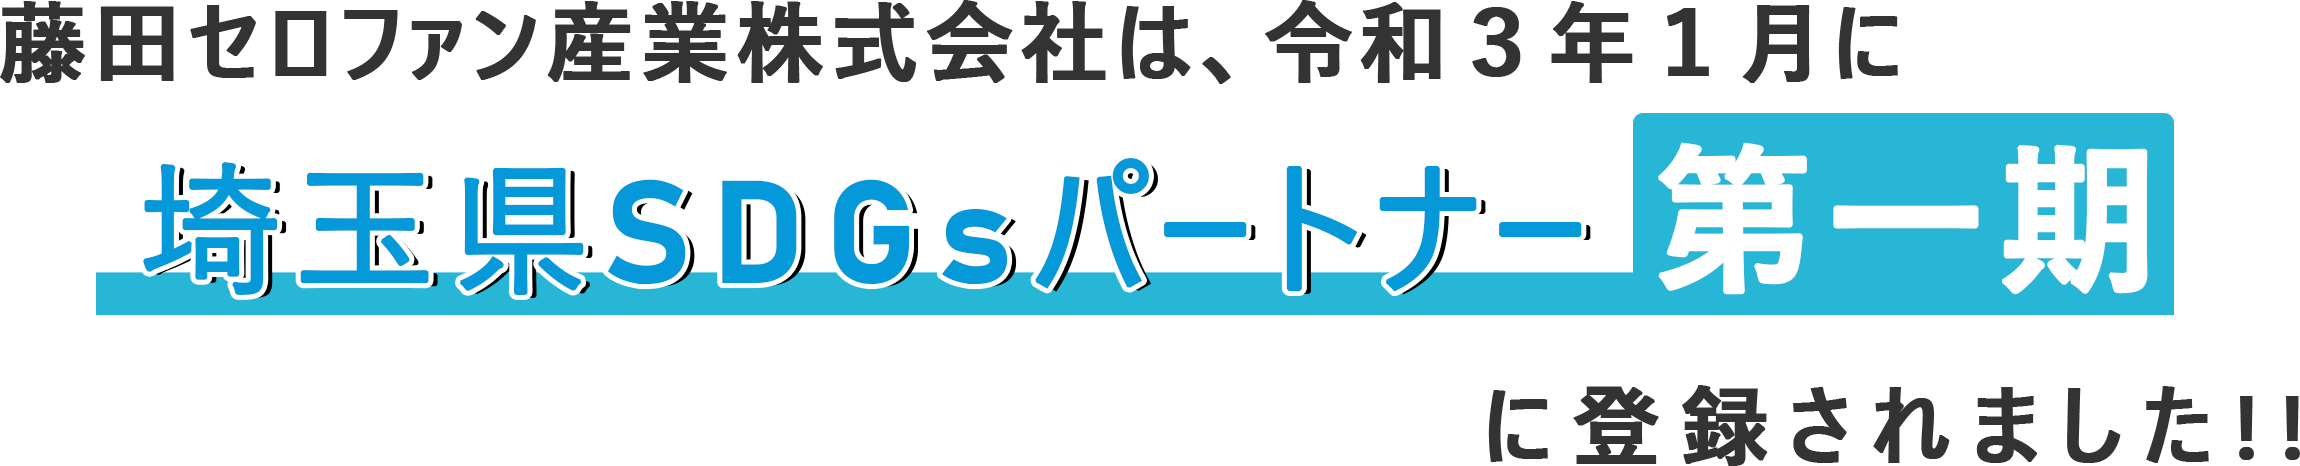 藤田セロファン産業は令和3年1月に埼玉県SDGsパートナー第一期に登録されました